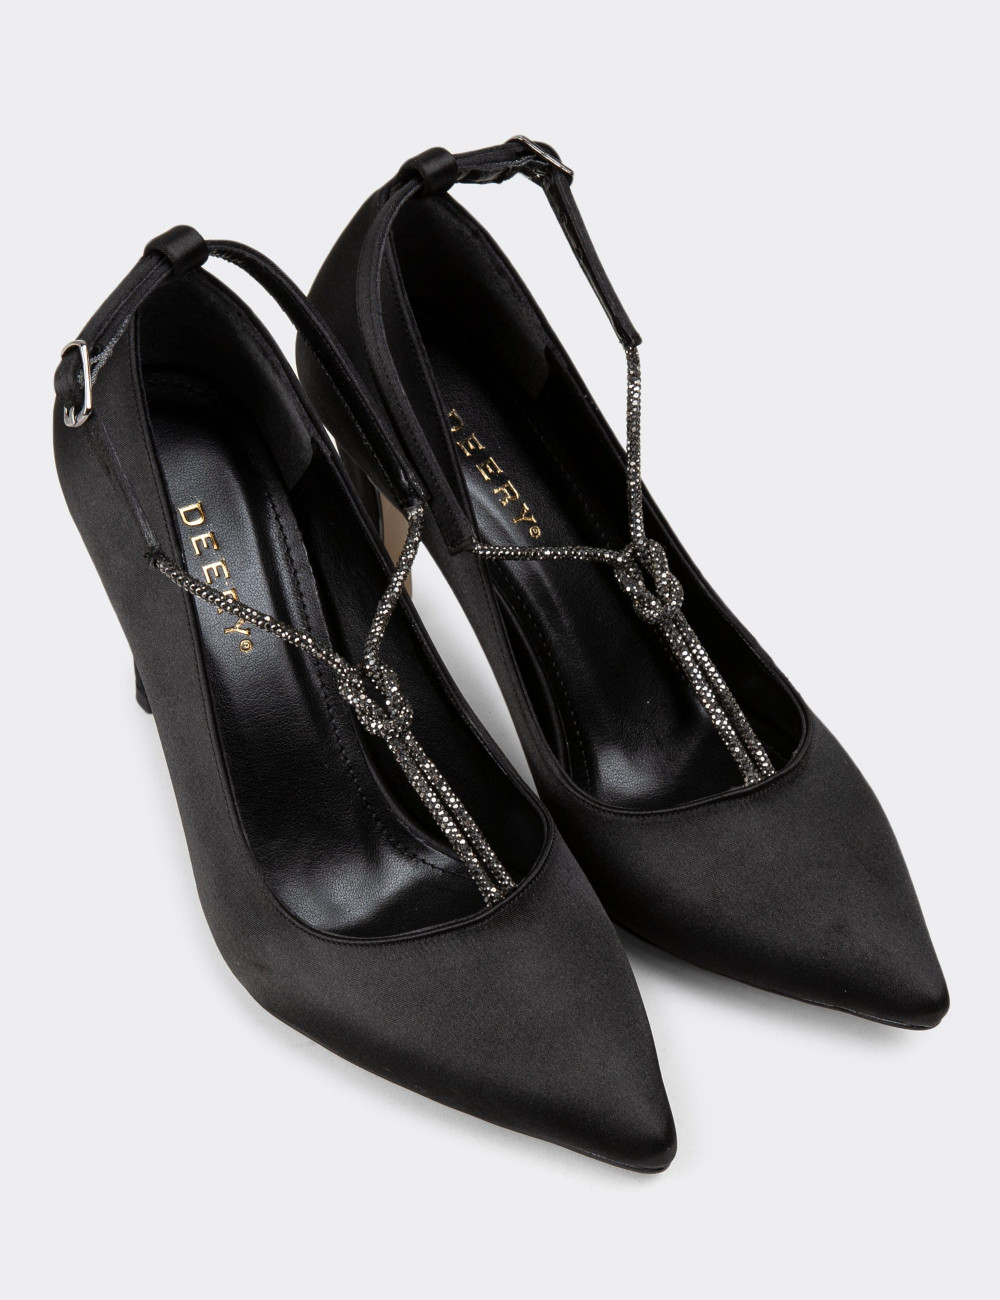 Siyah Stiletto Kadın Topuklu Ayakkabı - K0075ZSYHM01